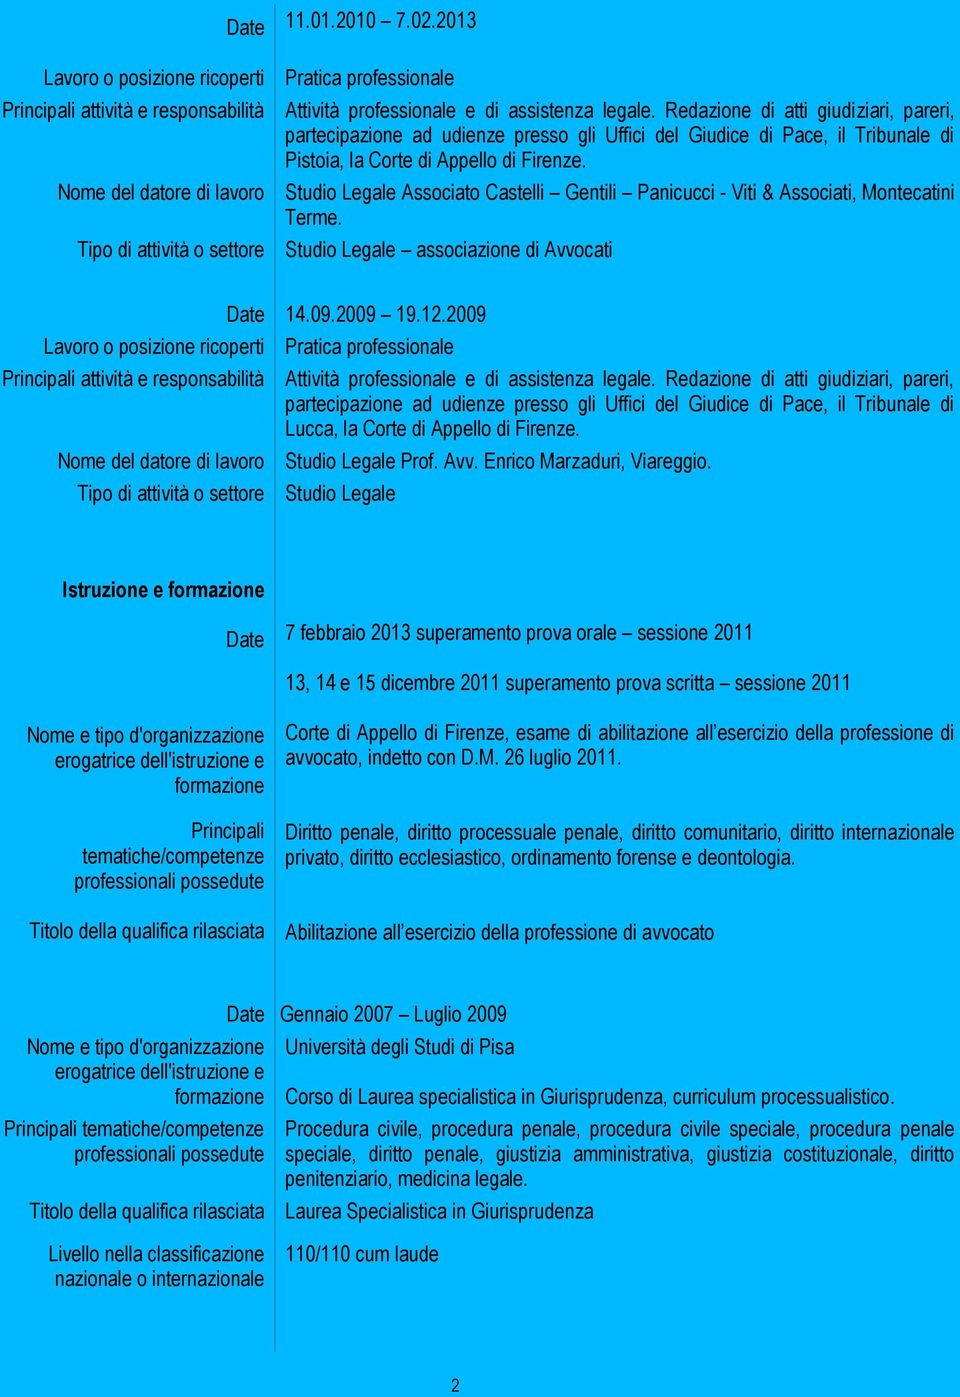 Studio Legale Associato Castelli Gentili Panicucci - Viti & Associati, Montecatini Terme. Studio Legale associazione di Avvocati Nome del datore di lavoro 14.09.2009 19.12.